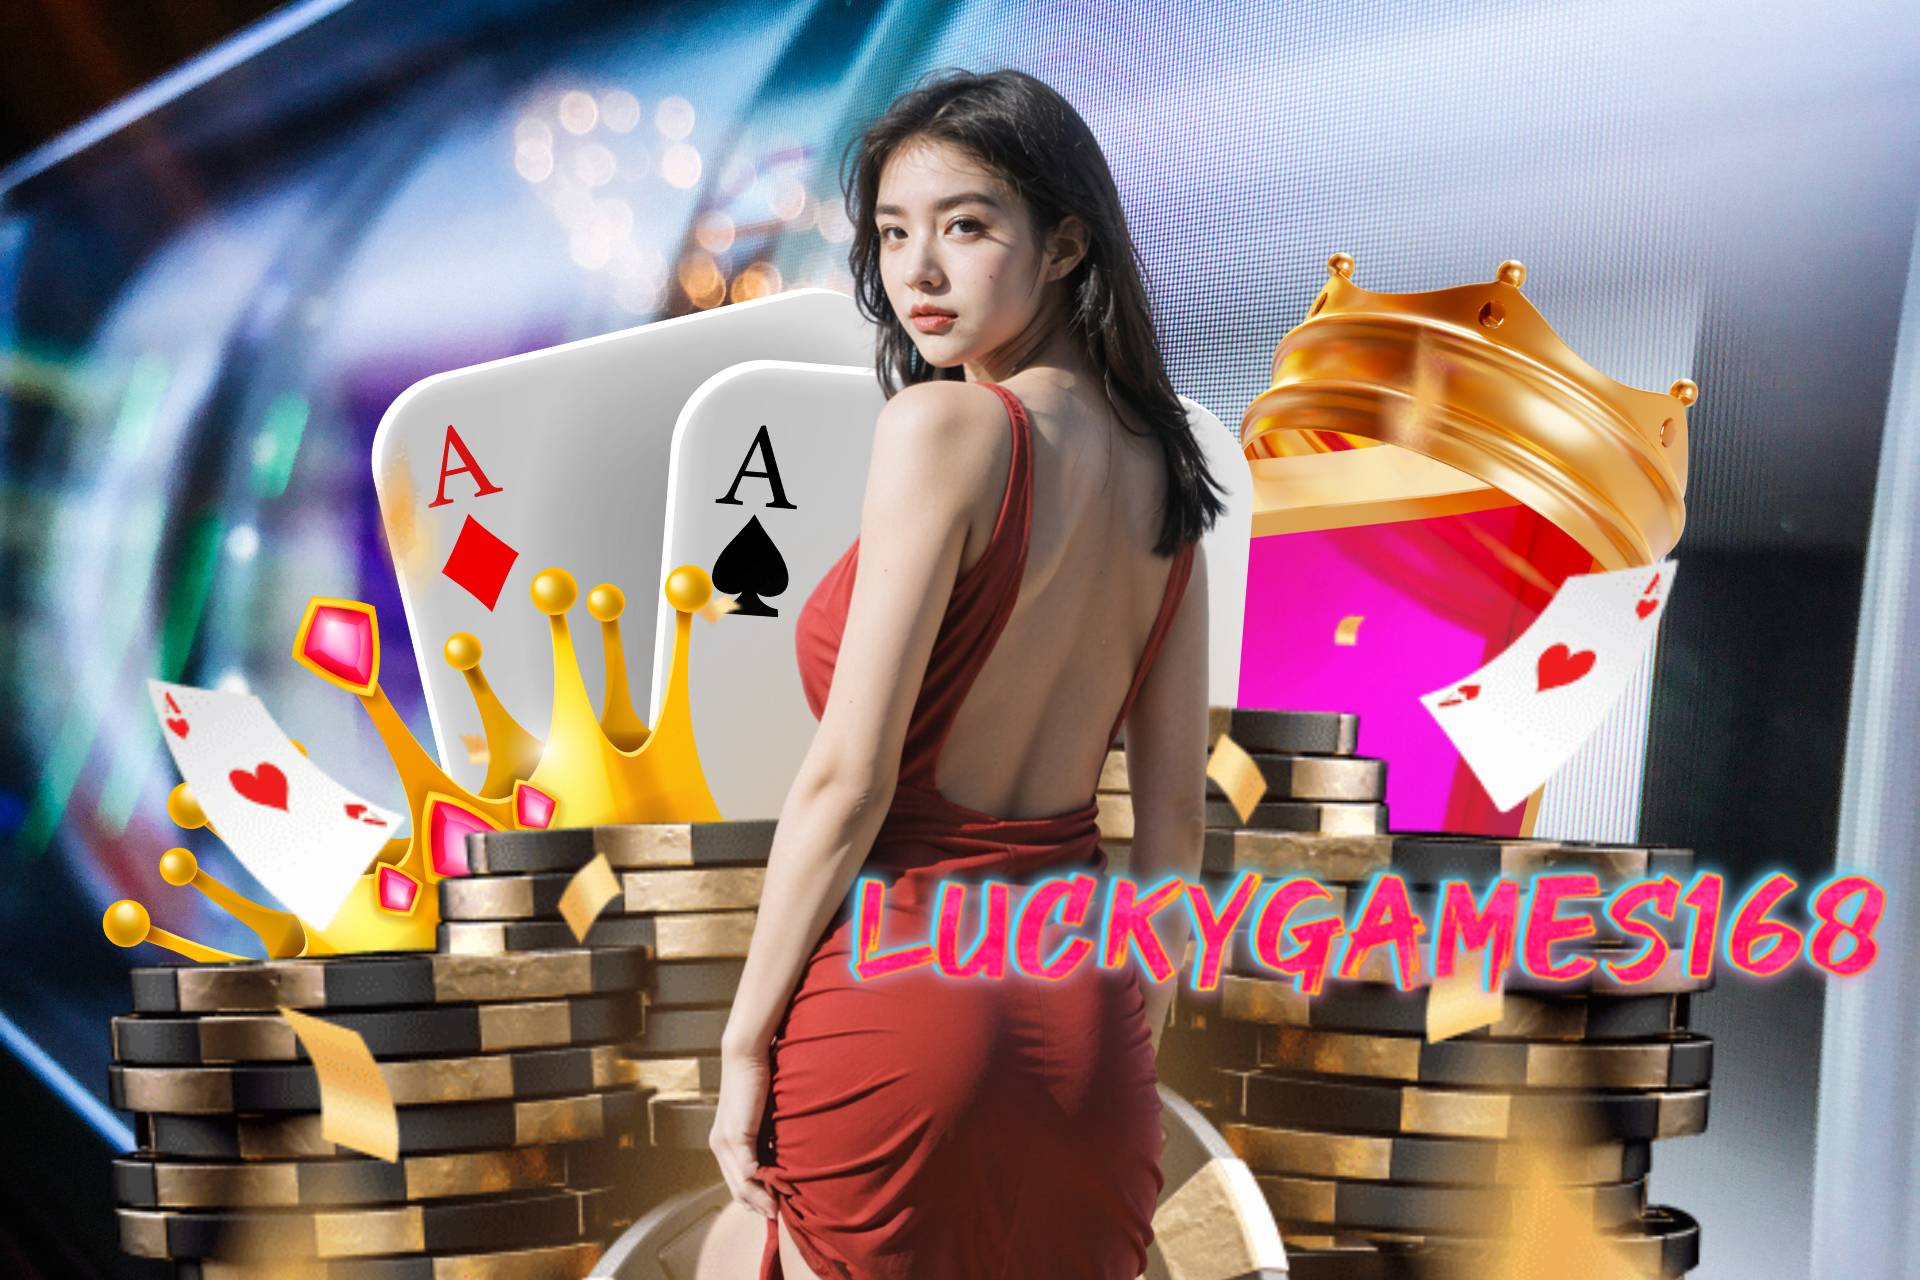 luckygames168